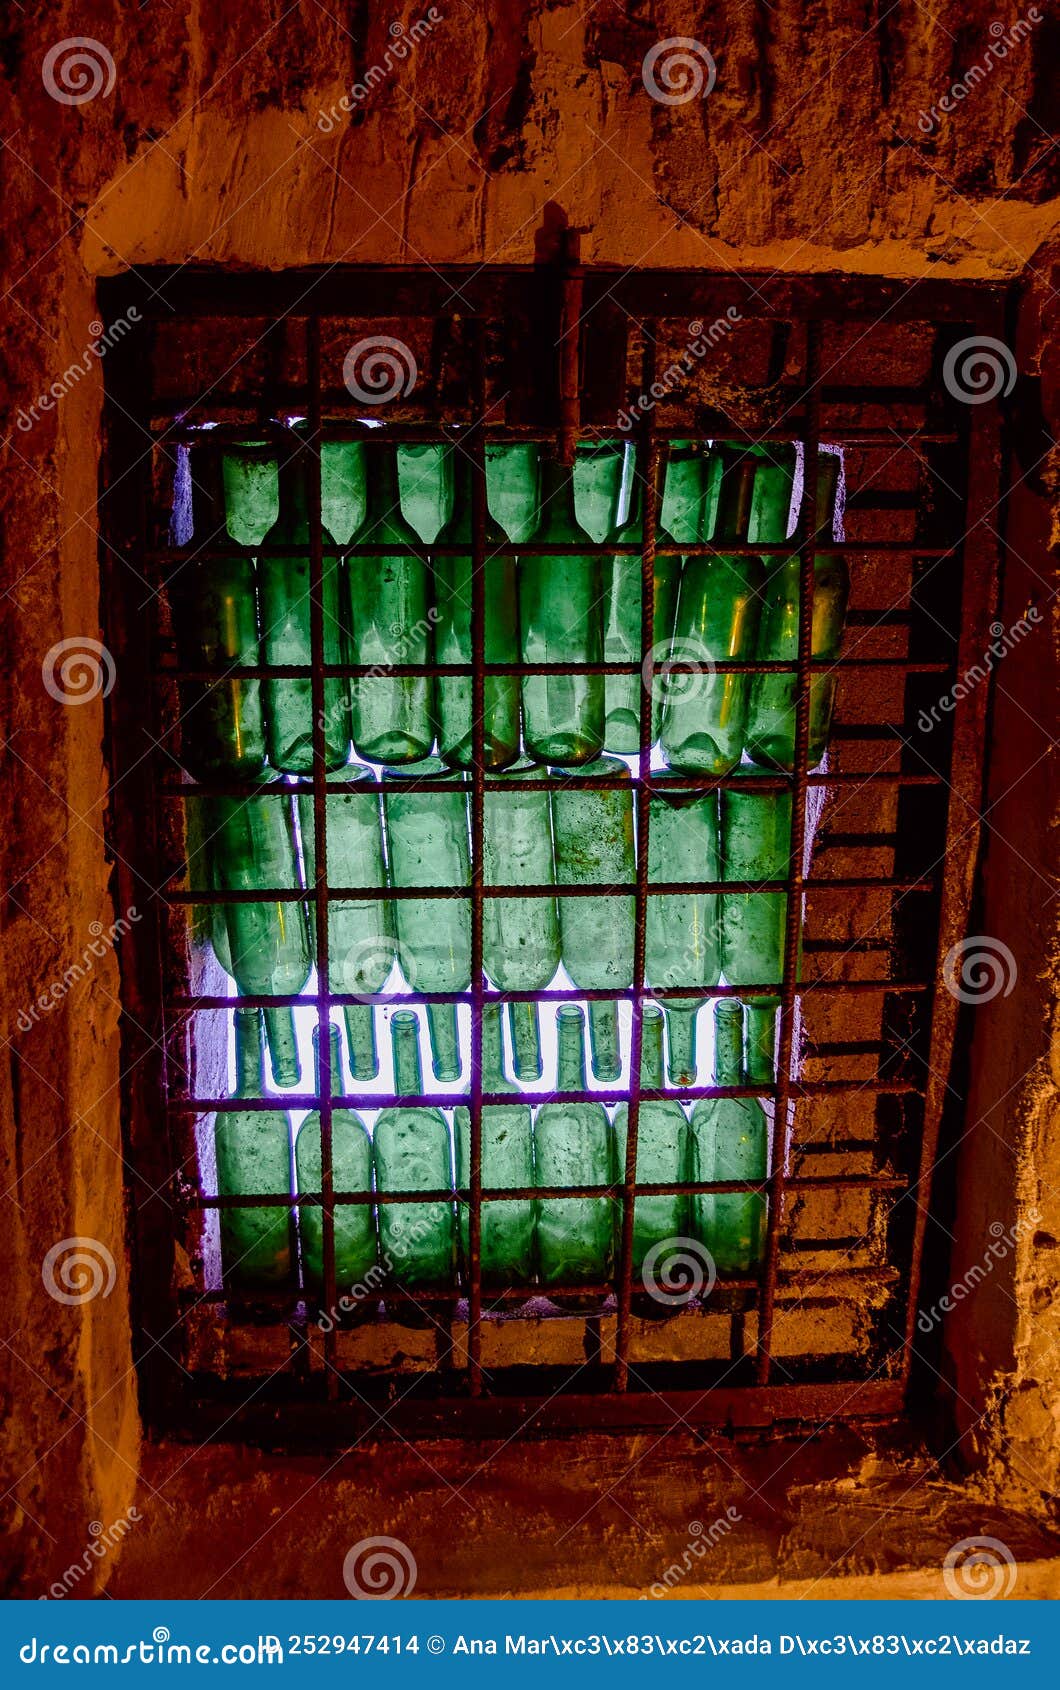 window of green wine bottles in a wine cellar